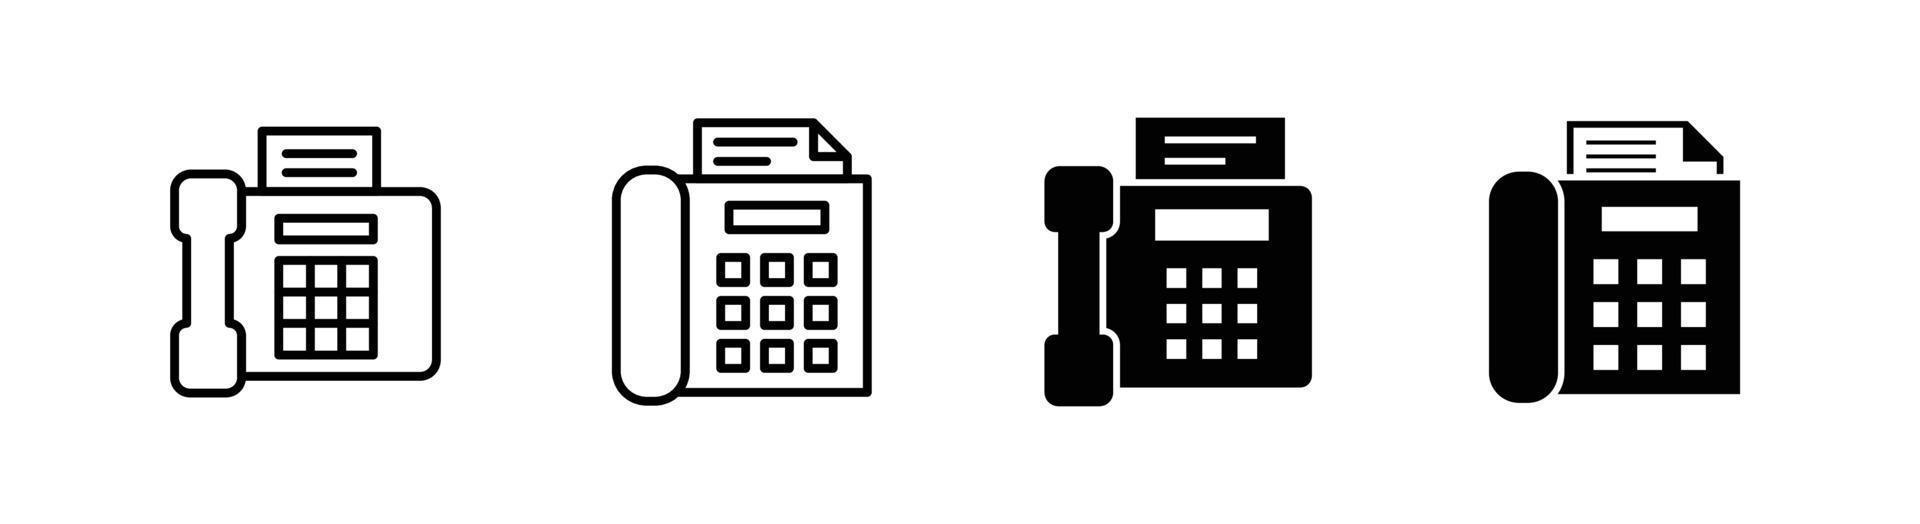 elemento di design dell'icona del fax adatto per sito Web, design di stampa o app vettore